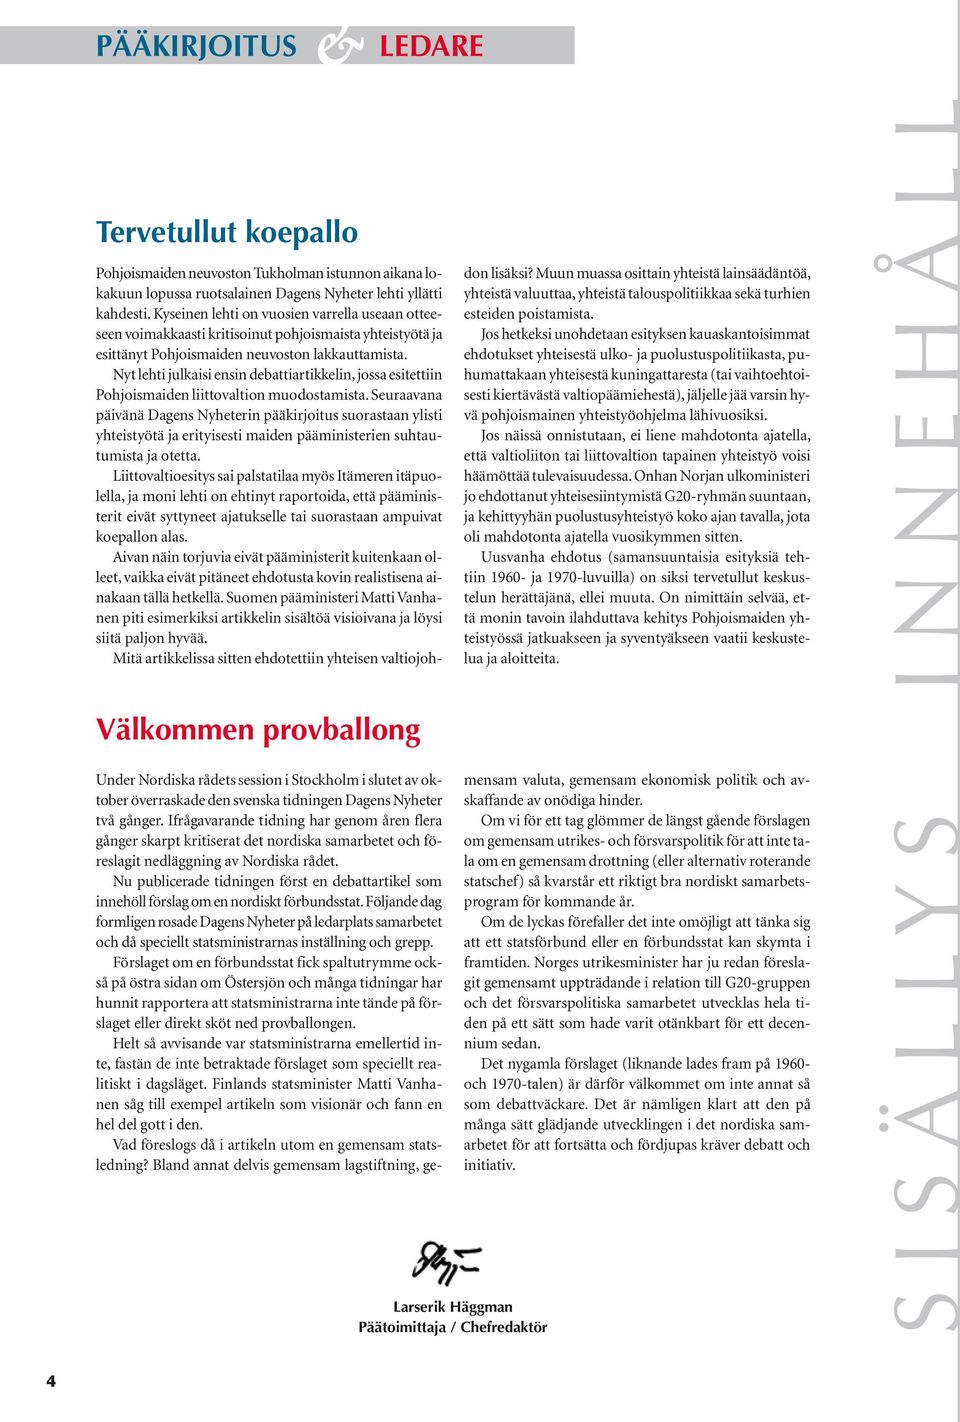 Nyt lehti julkaisi ensin debattiartikkelin, jossa esitettiin Pohjoismaiden liittovaltion muodostamista.